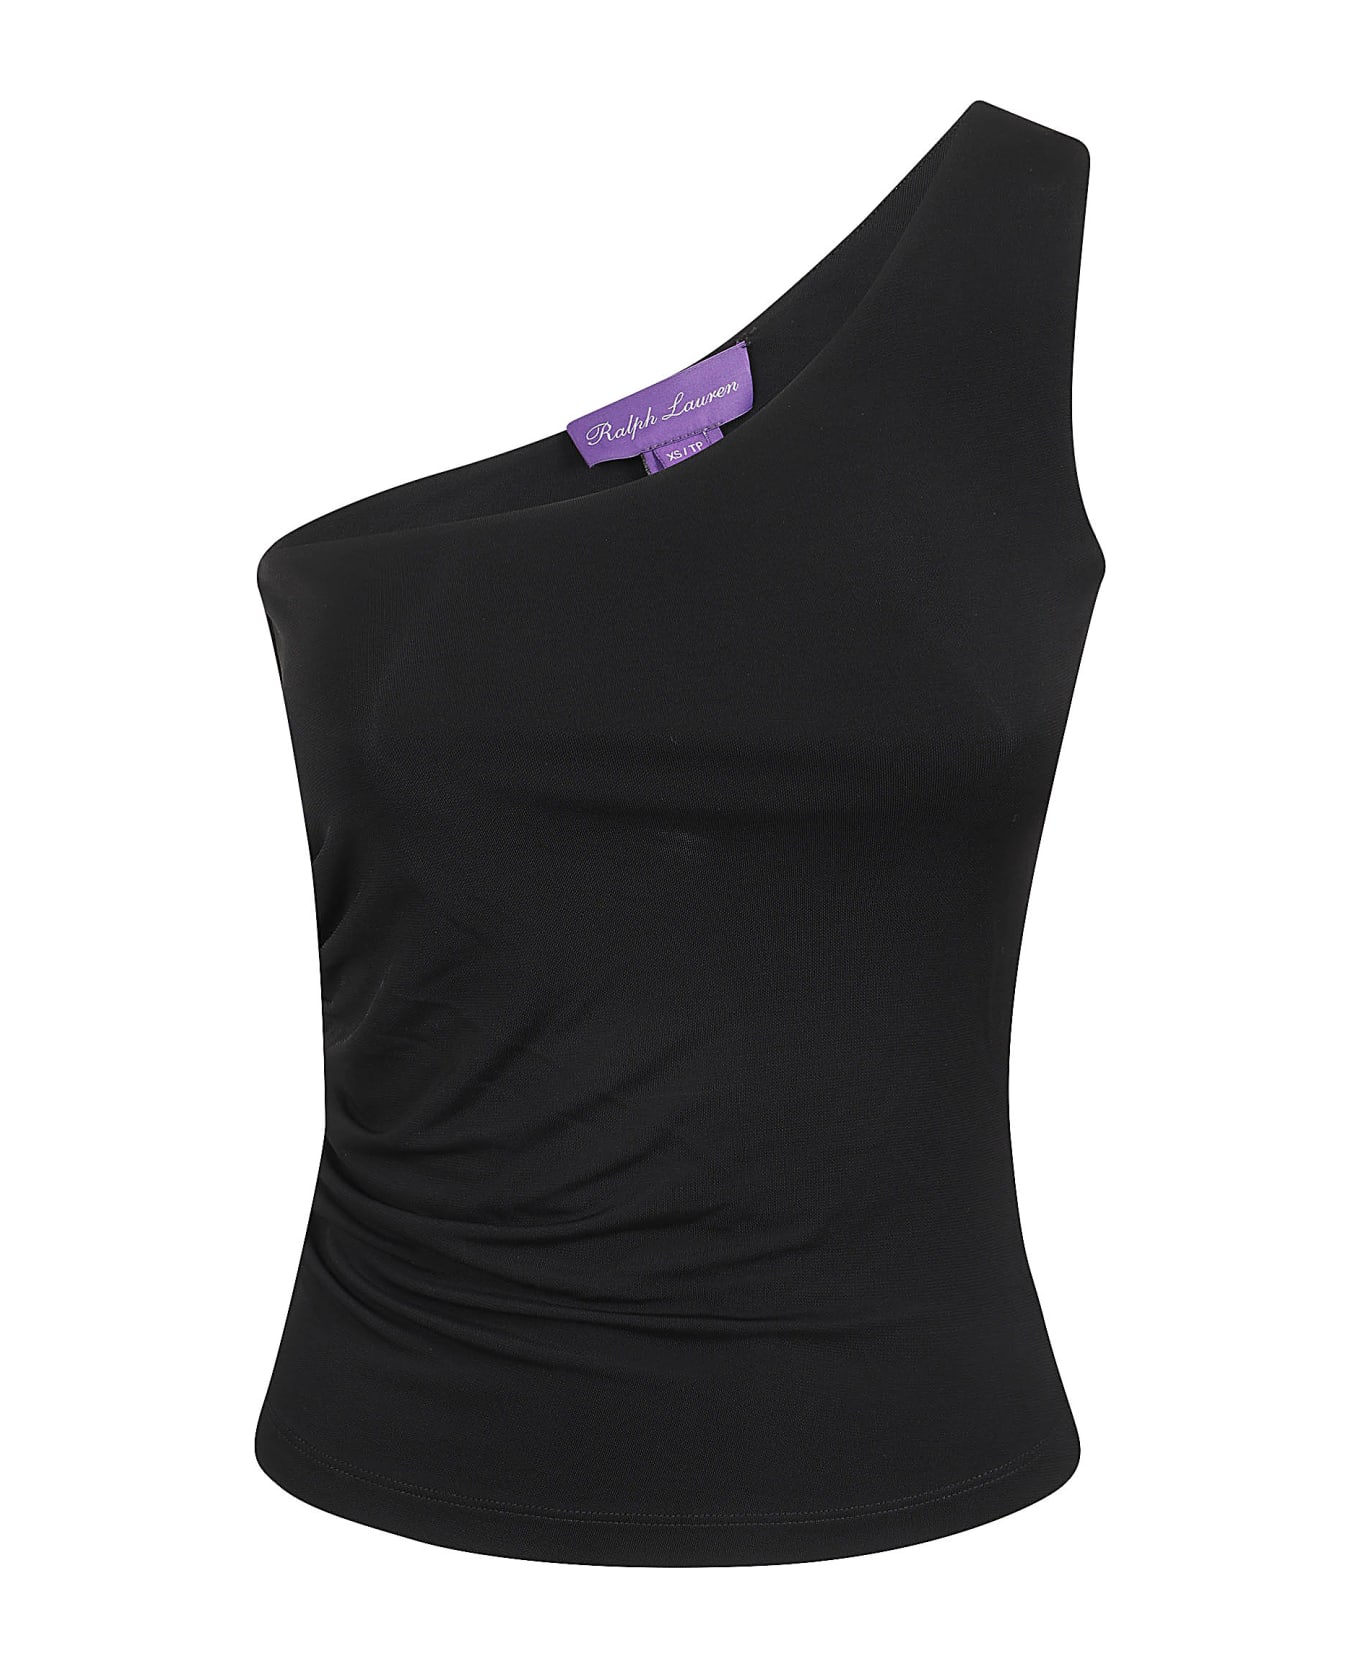 Ralph Lauren One Shdr Top-sleeveless-pullover - Black ニットウェア